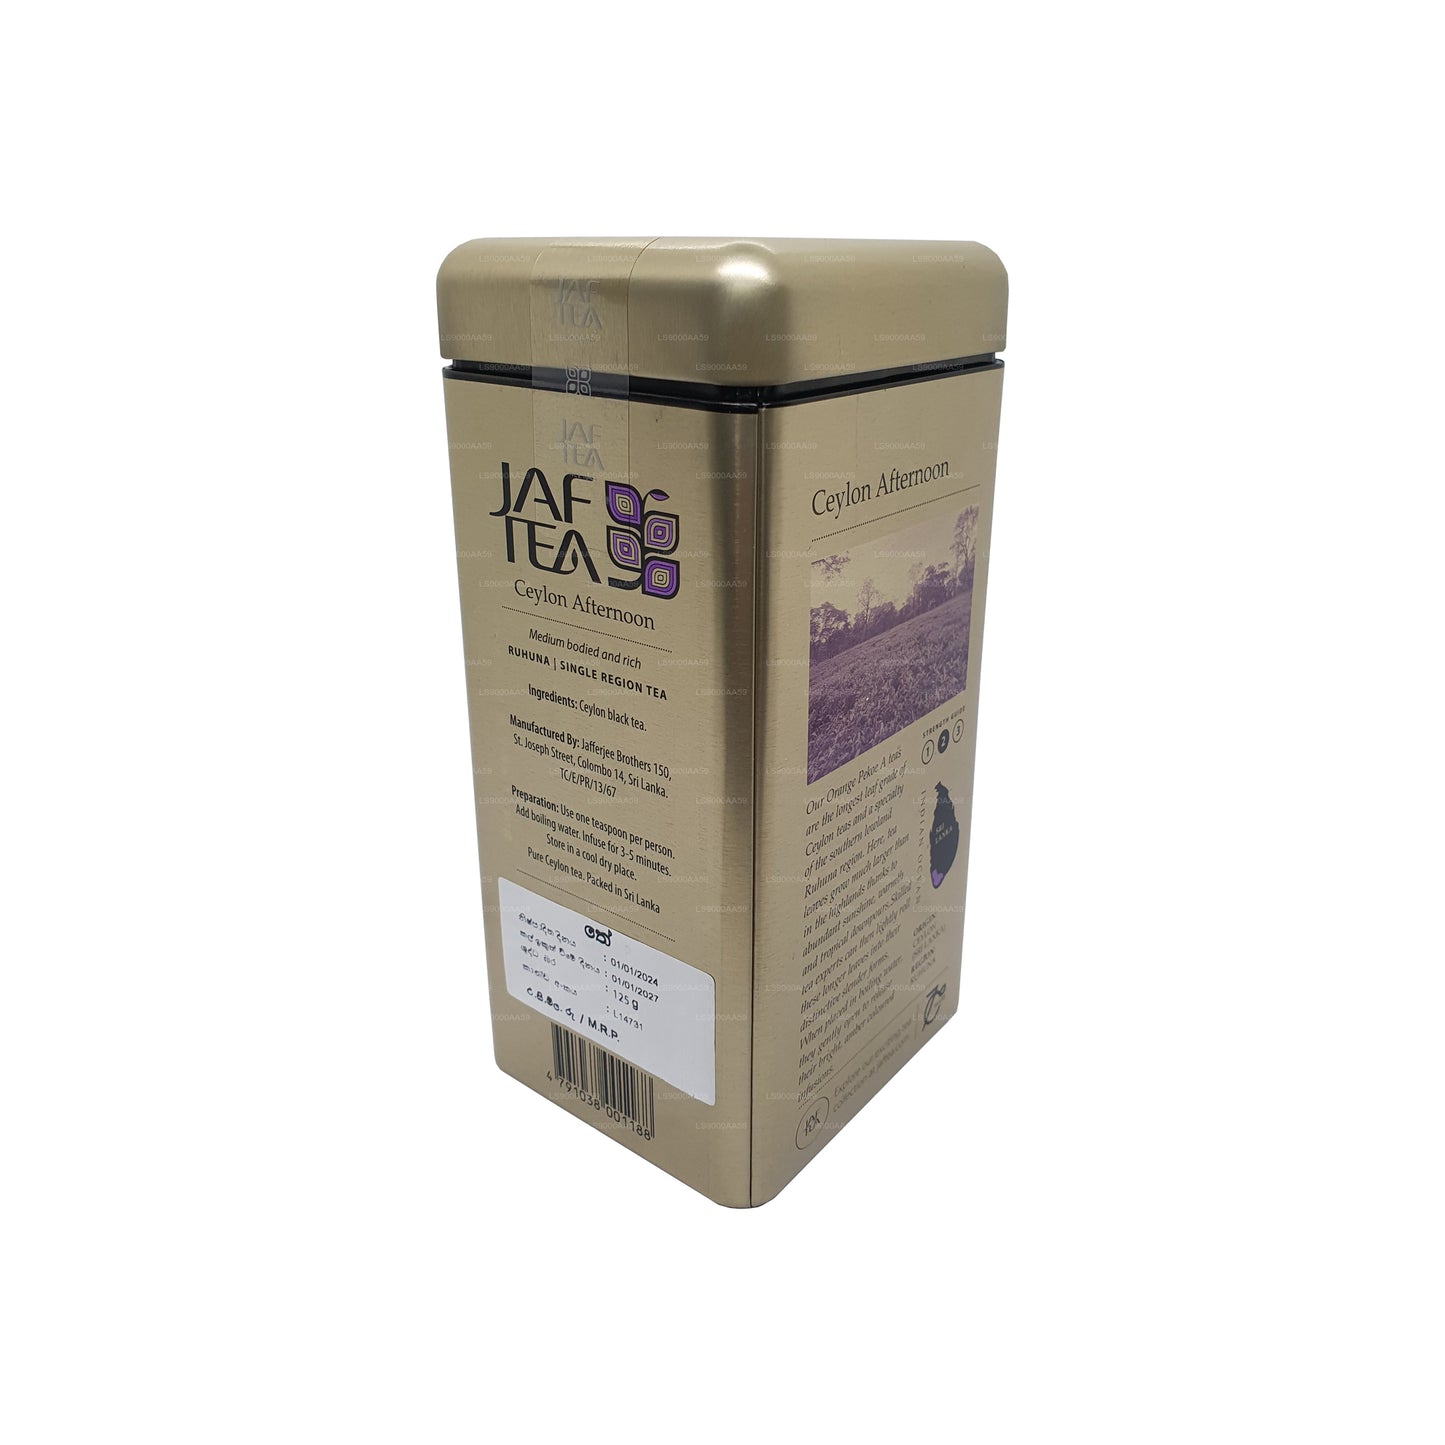 Jaf Çay Klasik Altın Koleksiyonu Seylan Öğleden Sonra Caddy (125g)